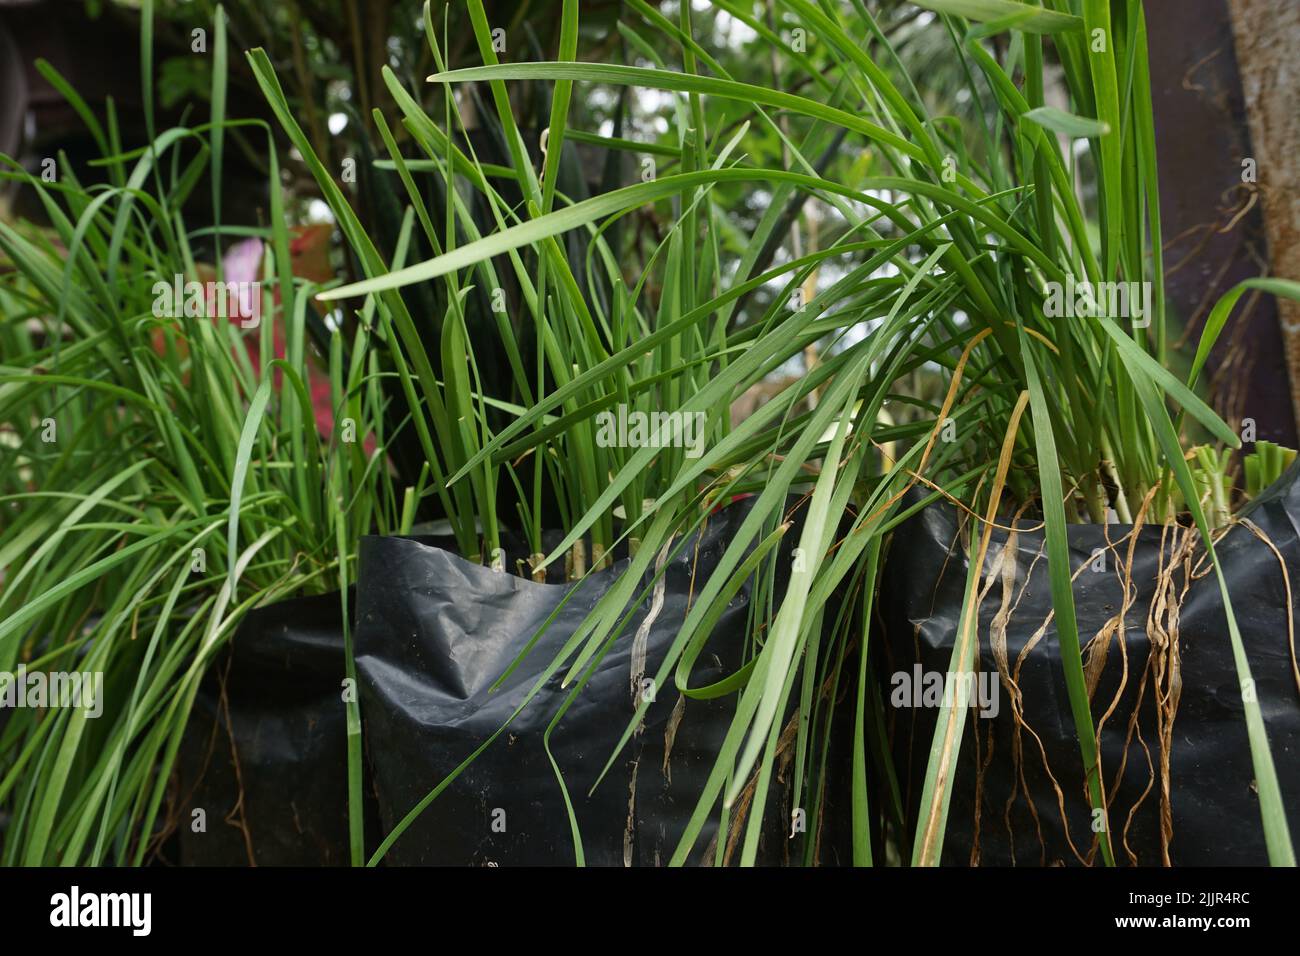 Eine selektive Fokusaufnahme von Topfgräsern im Garten Stockfoto